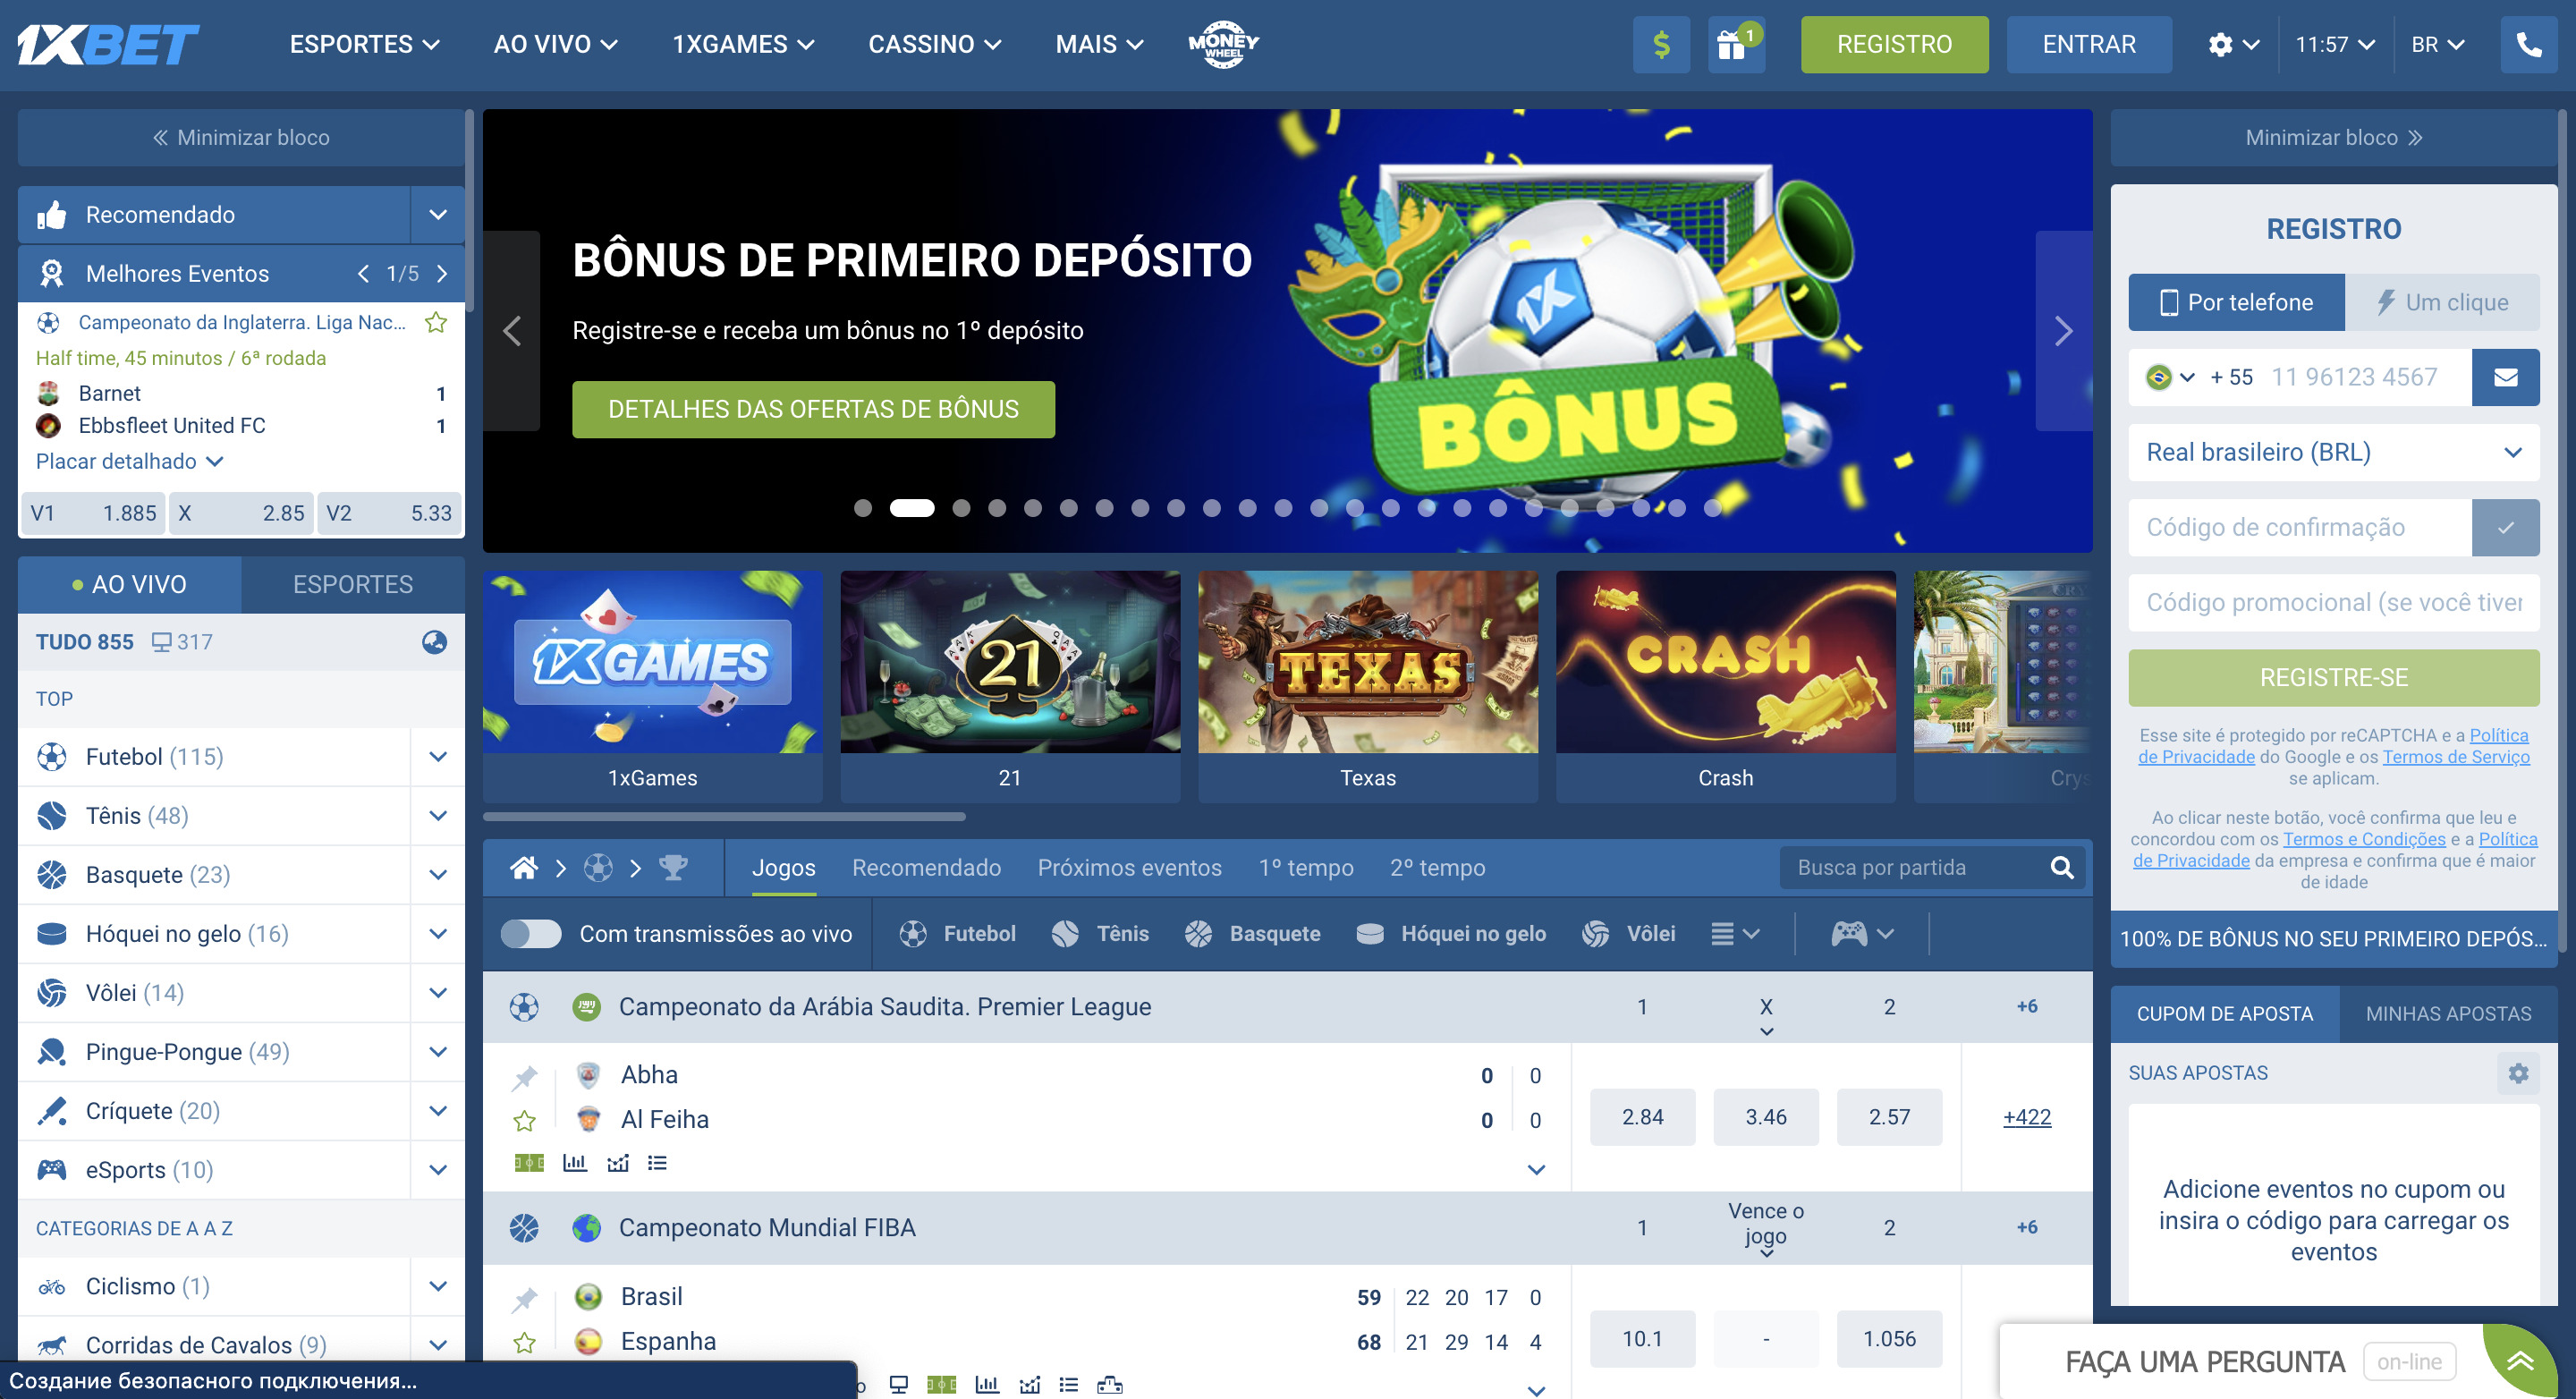 1xBet Página Principal - Captura de tela da página principal do site 1xBet, mostrando sua interface e ofertas para apostadores em 2023.